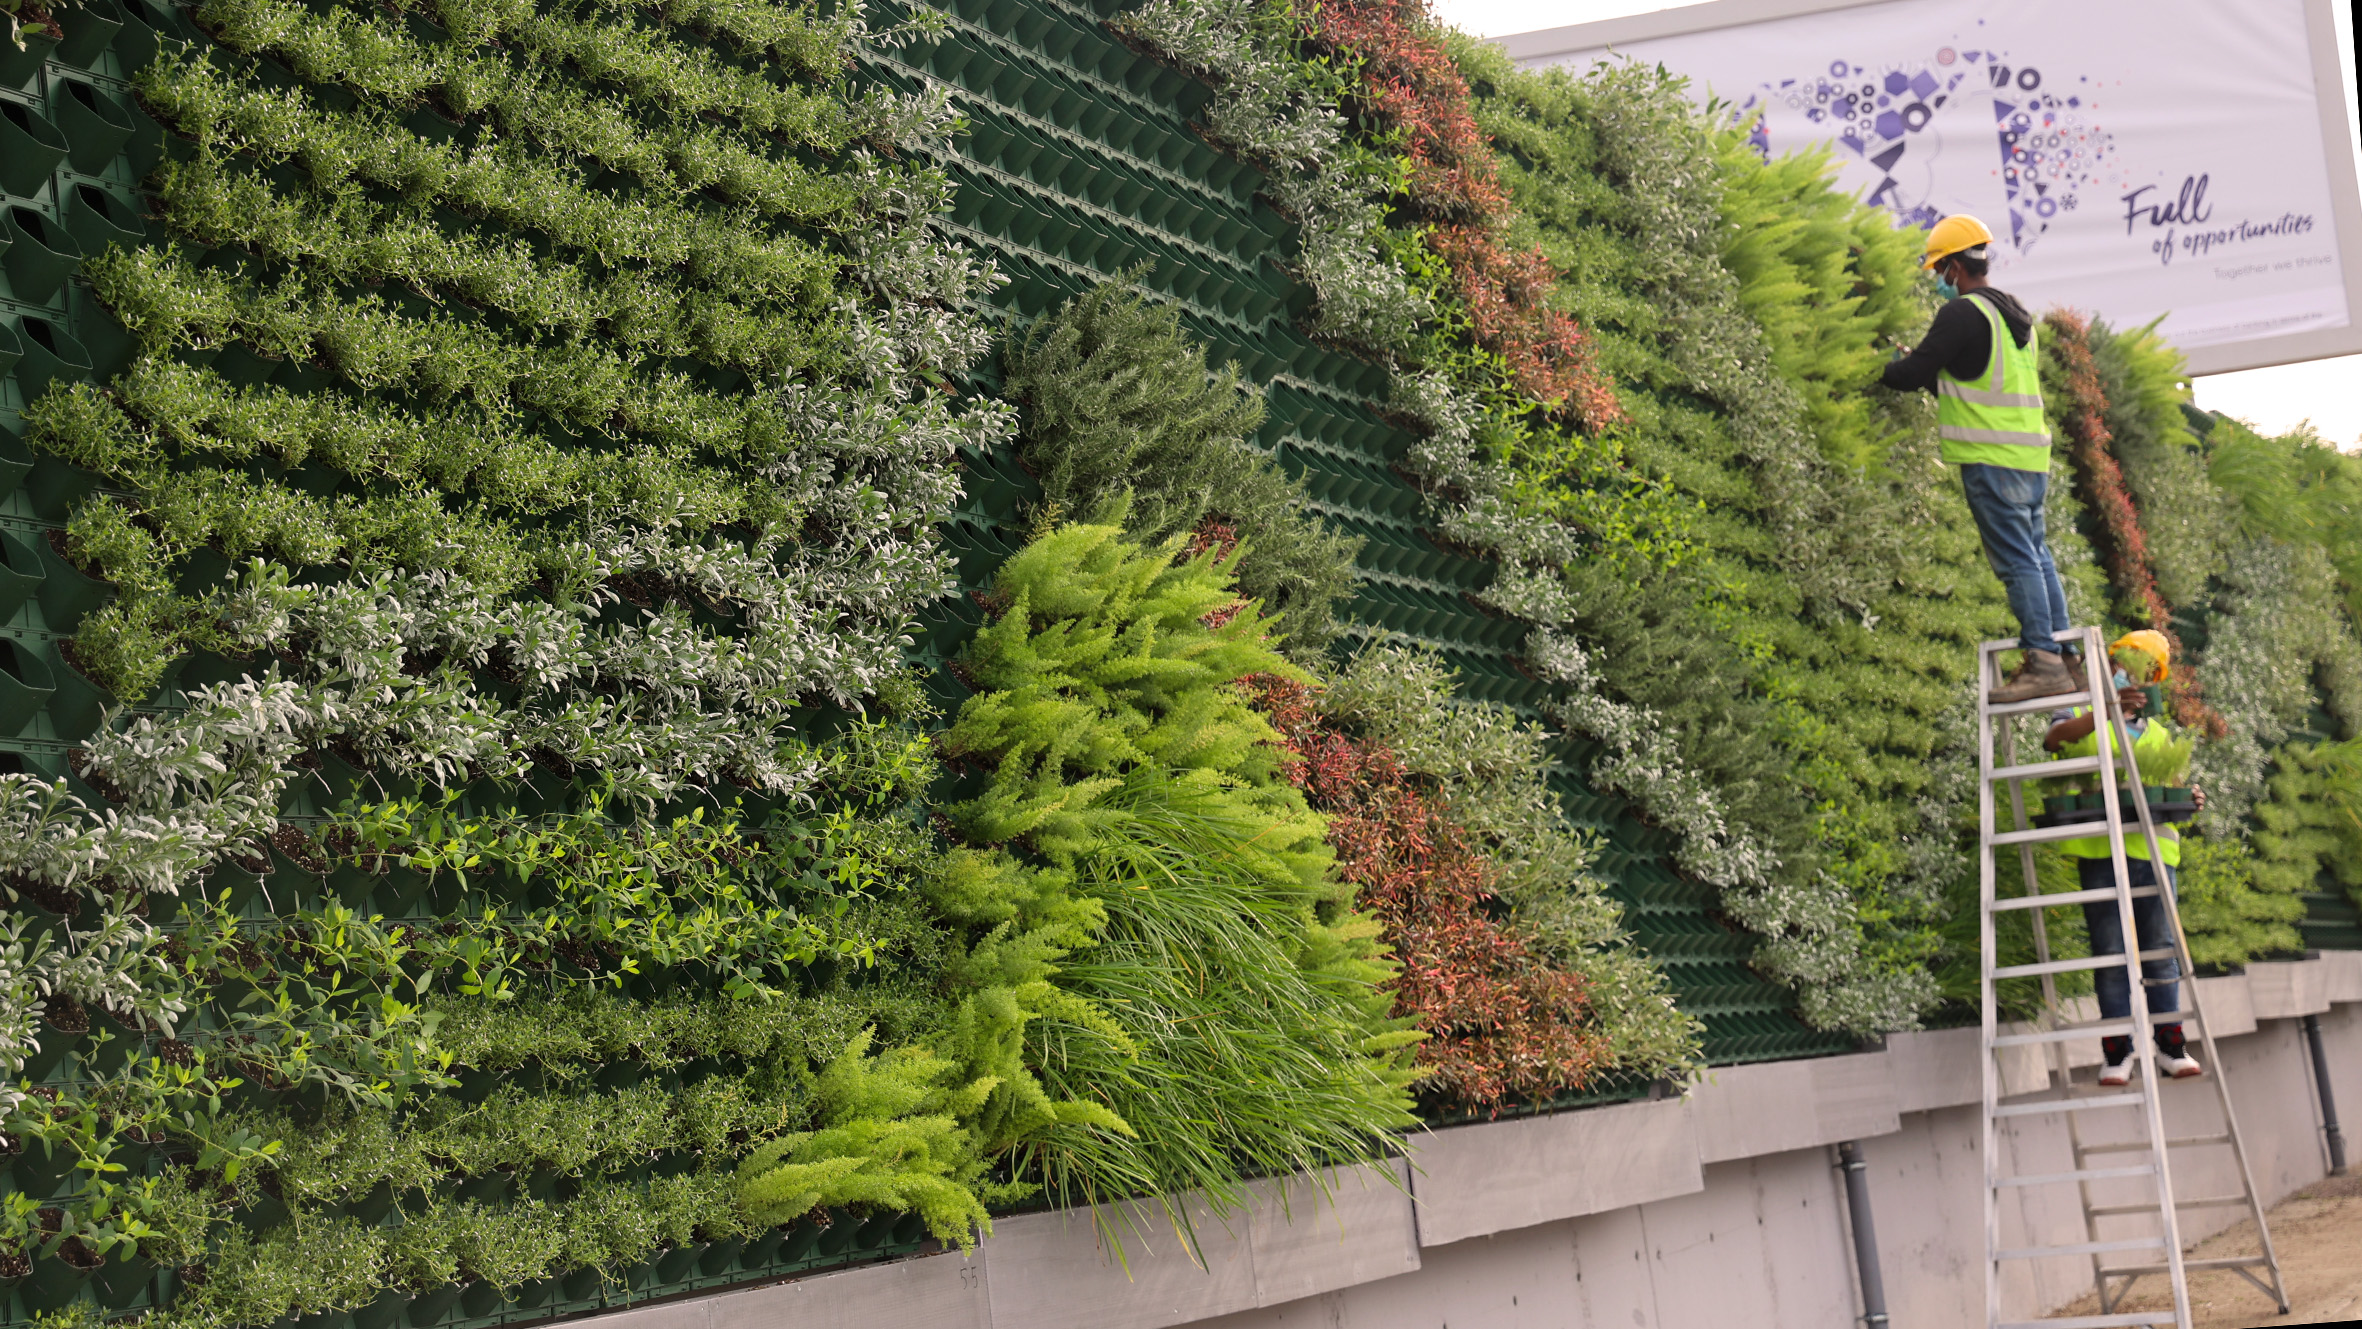 27,600 plants for longest green wall in Malta